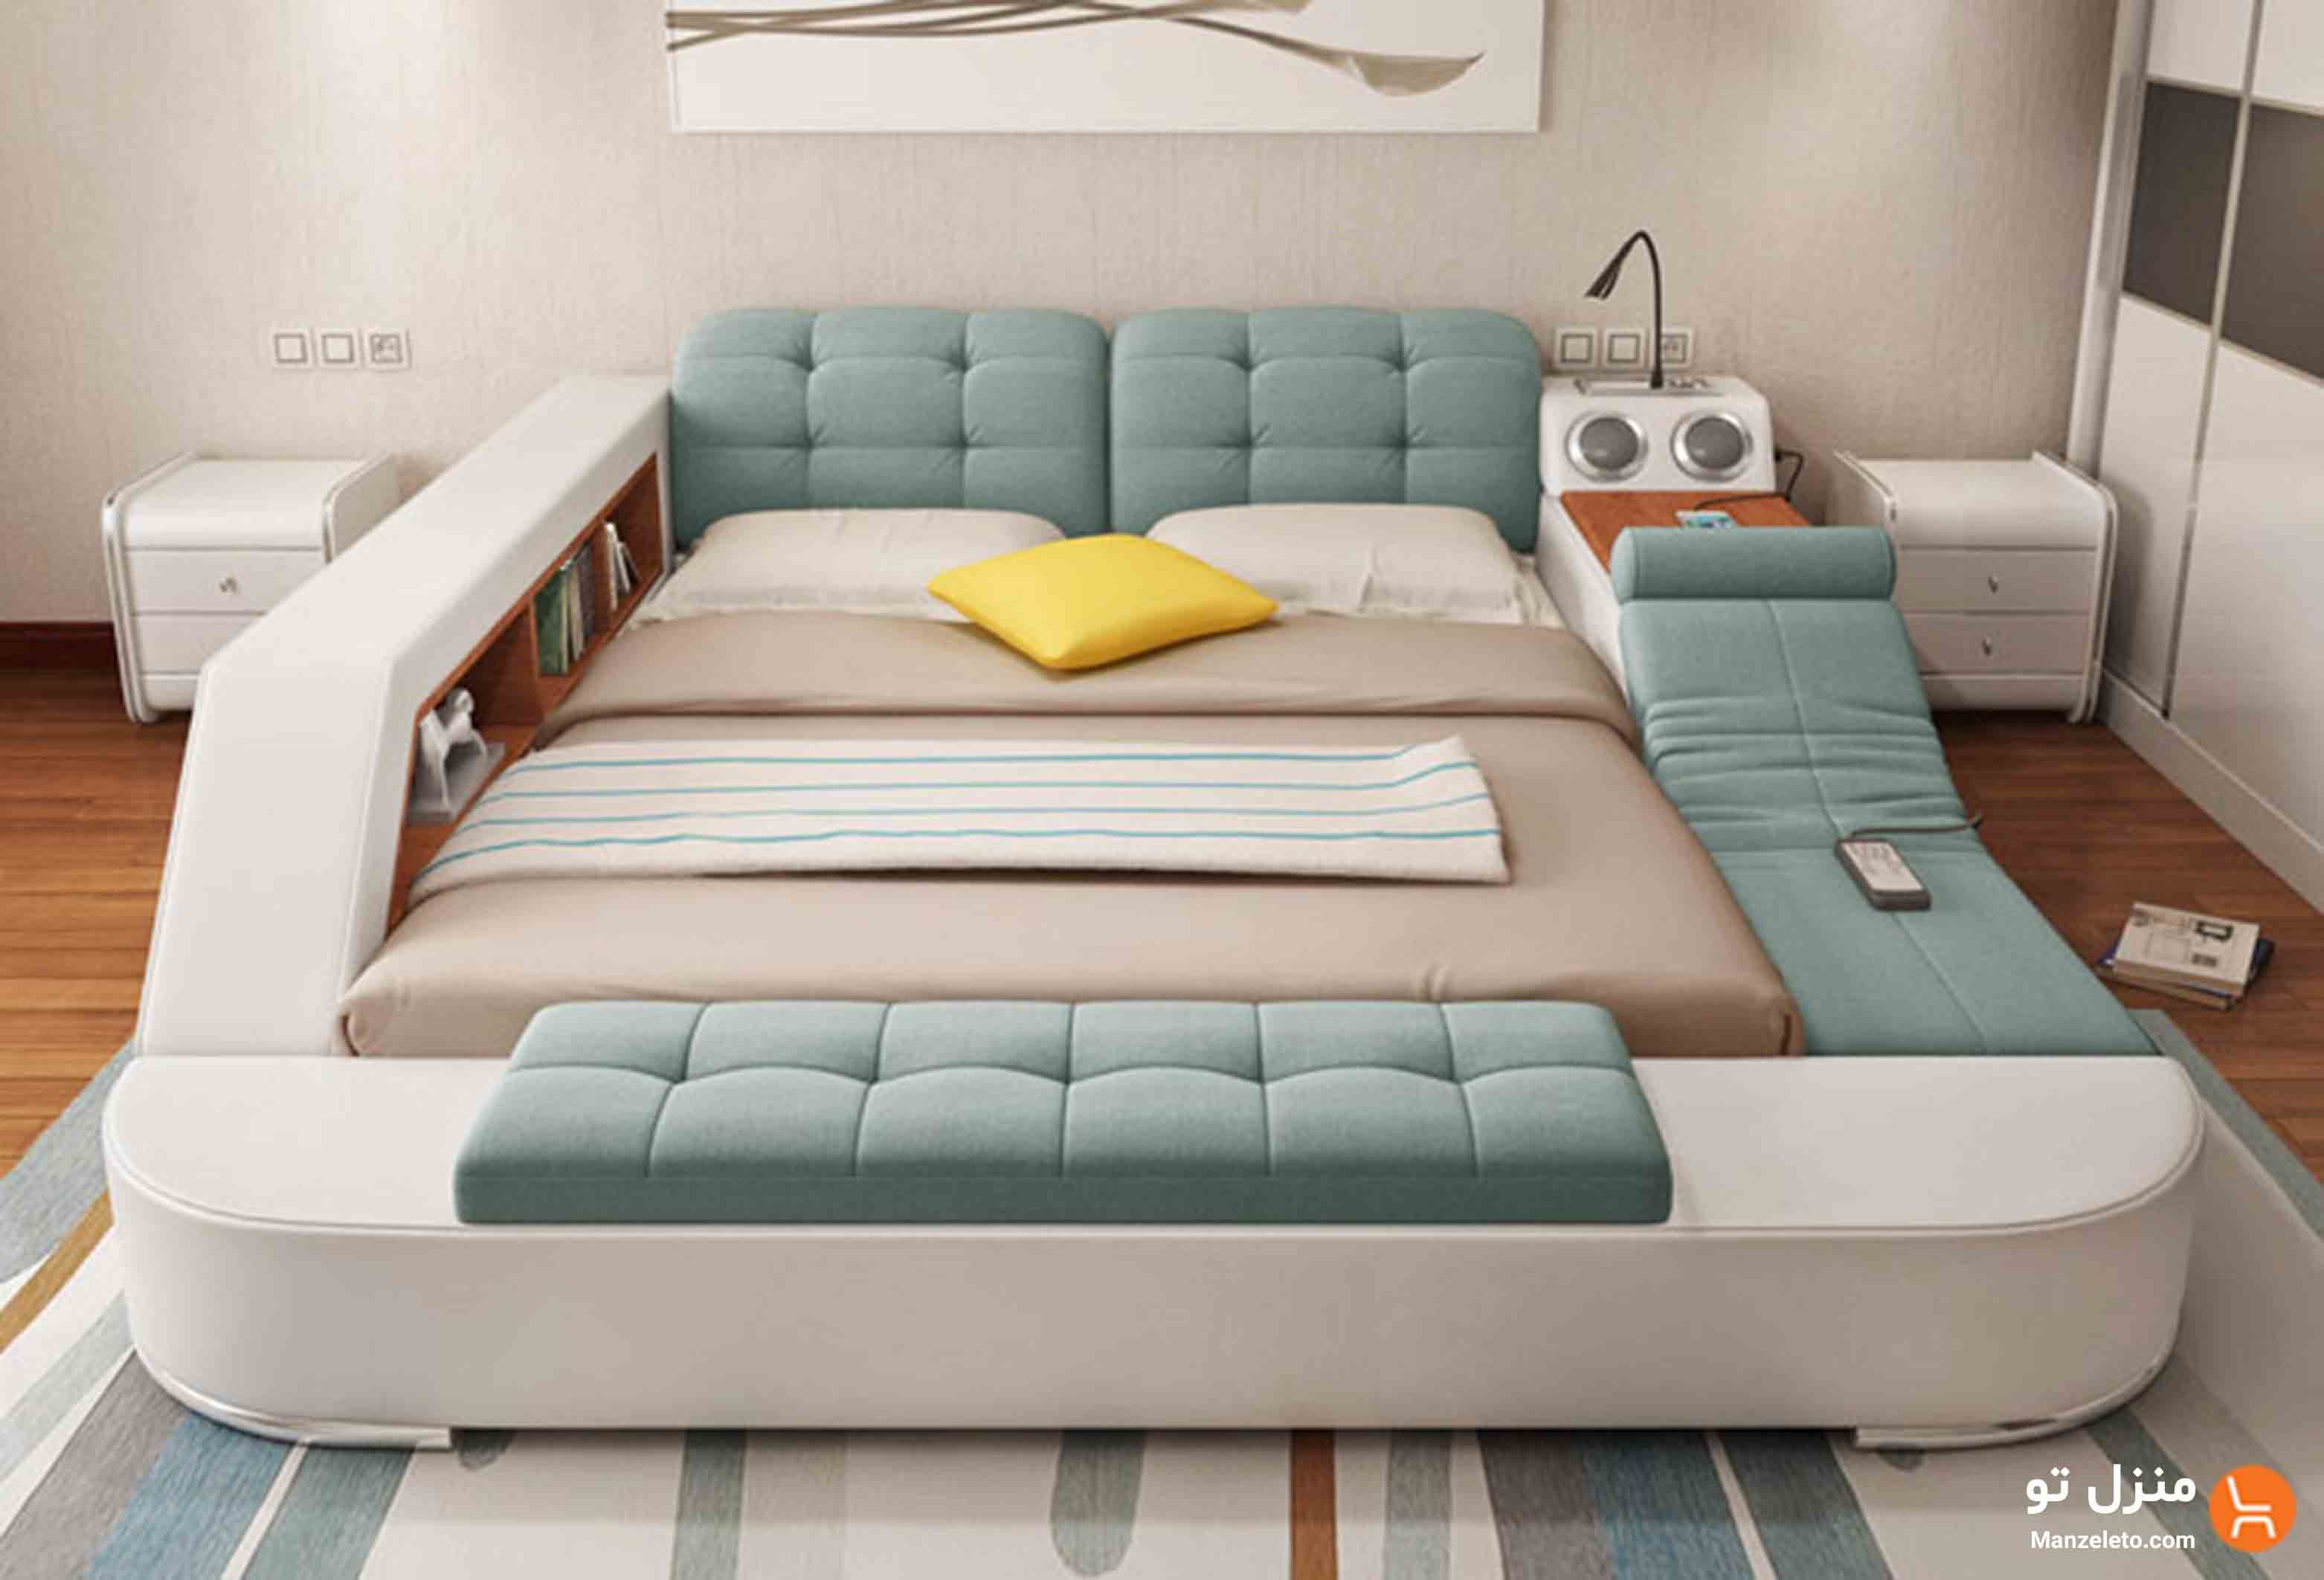 Бывают ли кровати. Многофункциональная кровать Ultimate camas. Многофункциональная кровать Smart Bed азиатская. Кровать многофункциональная Кинг сайз. Кровать татами Аскона.